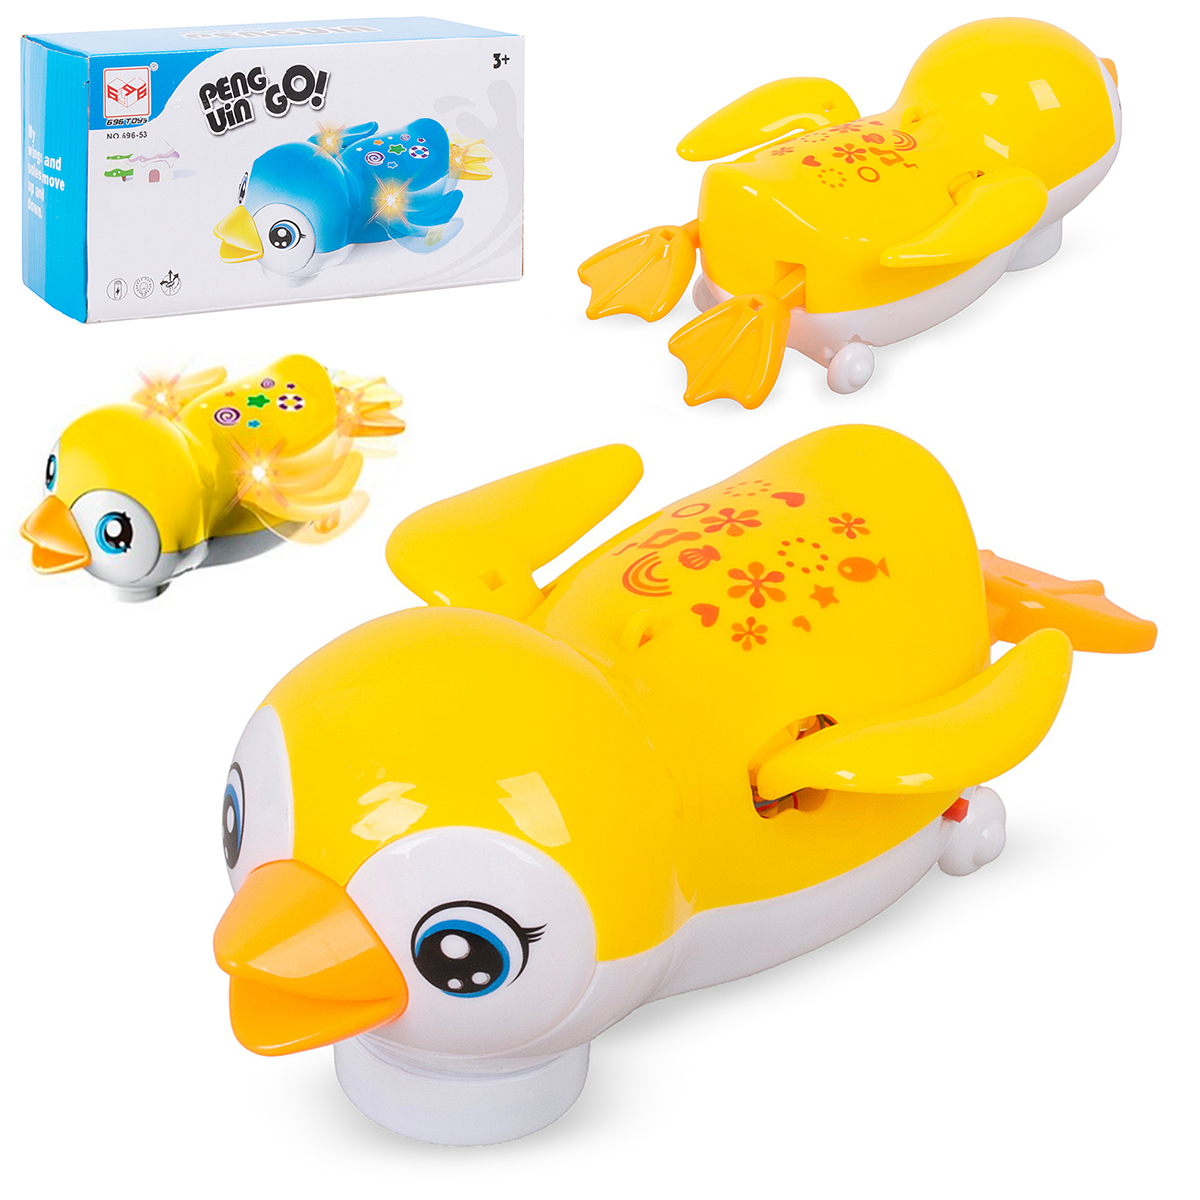 Музыкальная игрушка Tongde Пингвин 696-53 желтый